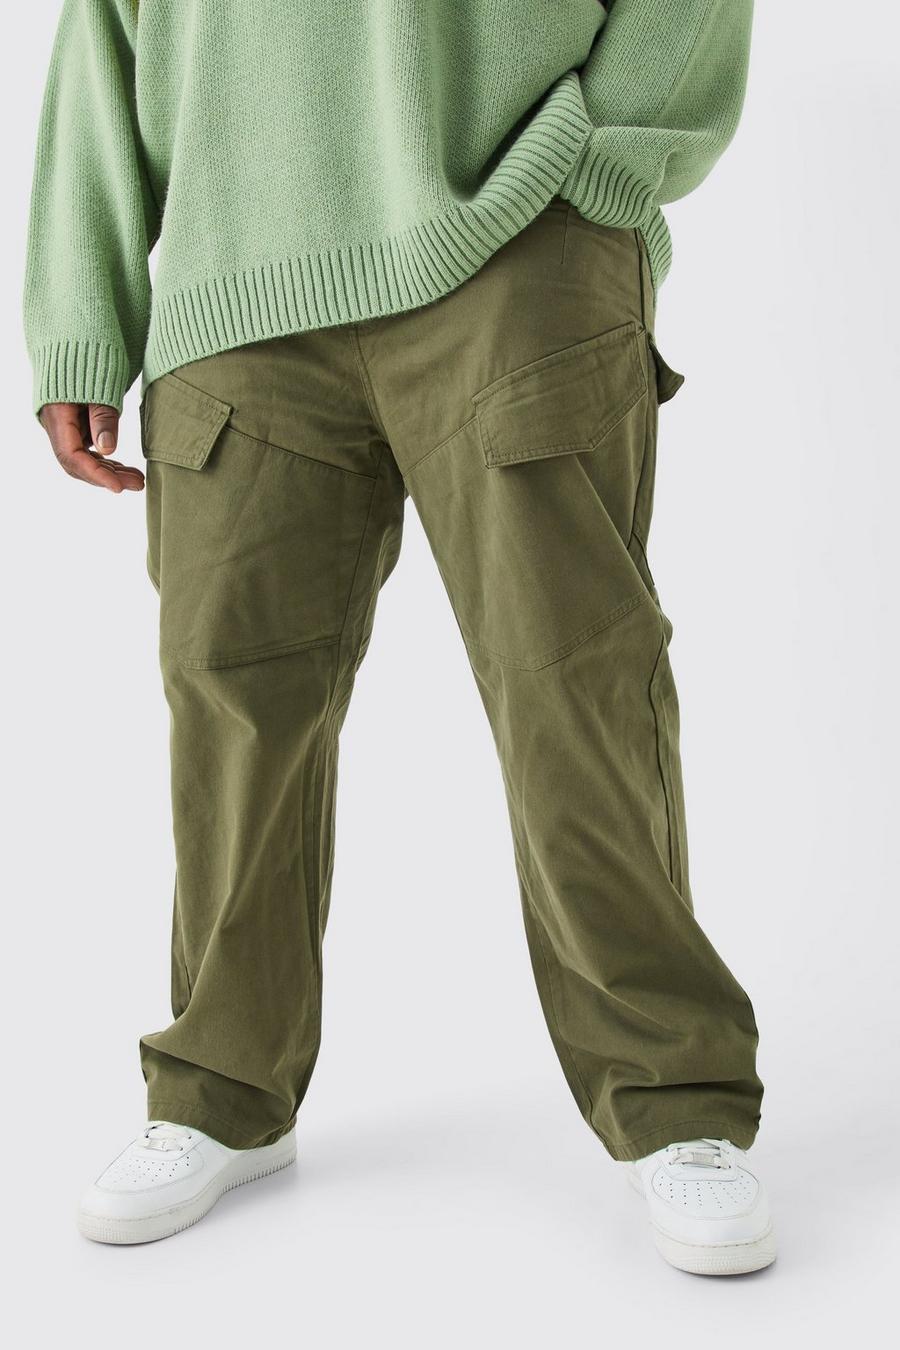 Pantalón Plus de sarga cargo asimétrico holgado con cintura fija, Khaki